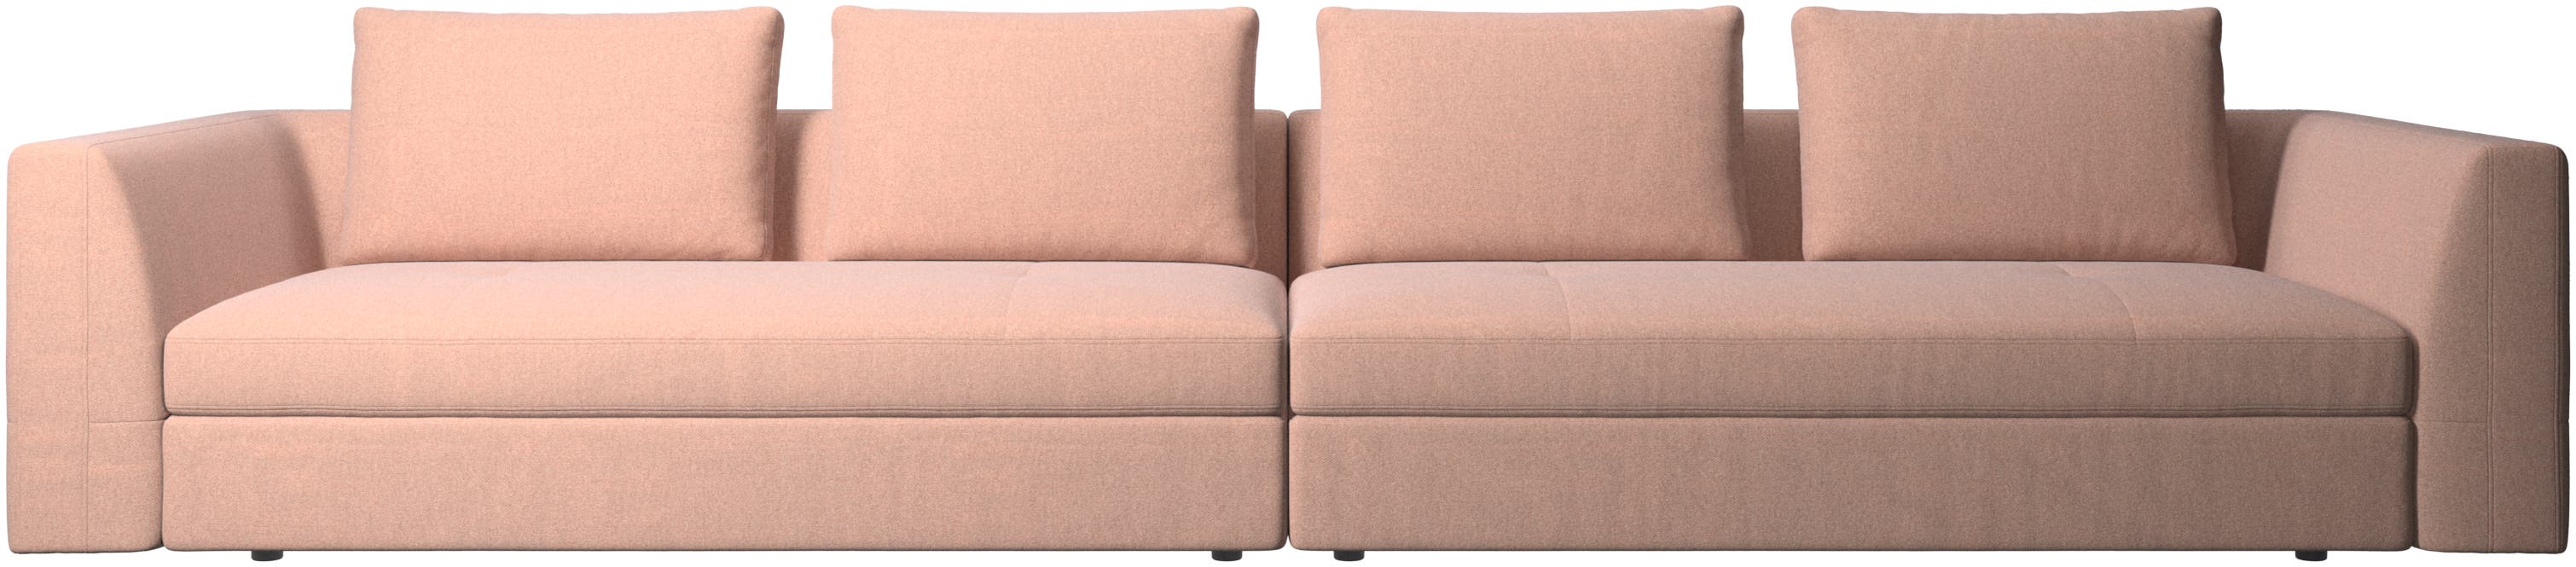 Bergamo 5 -személyes kanapé